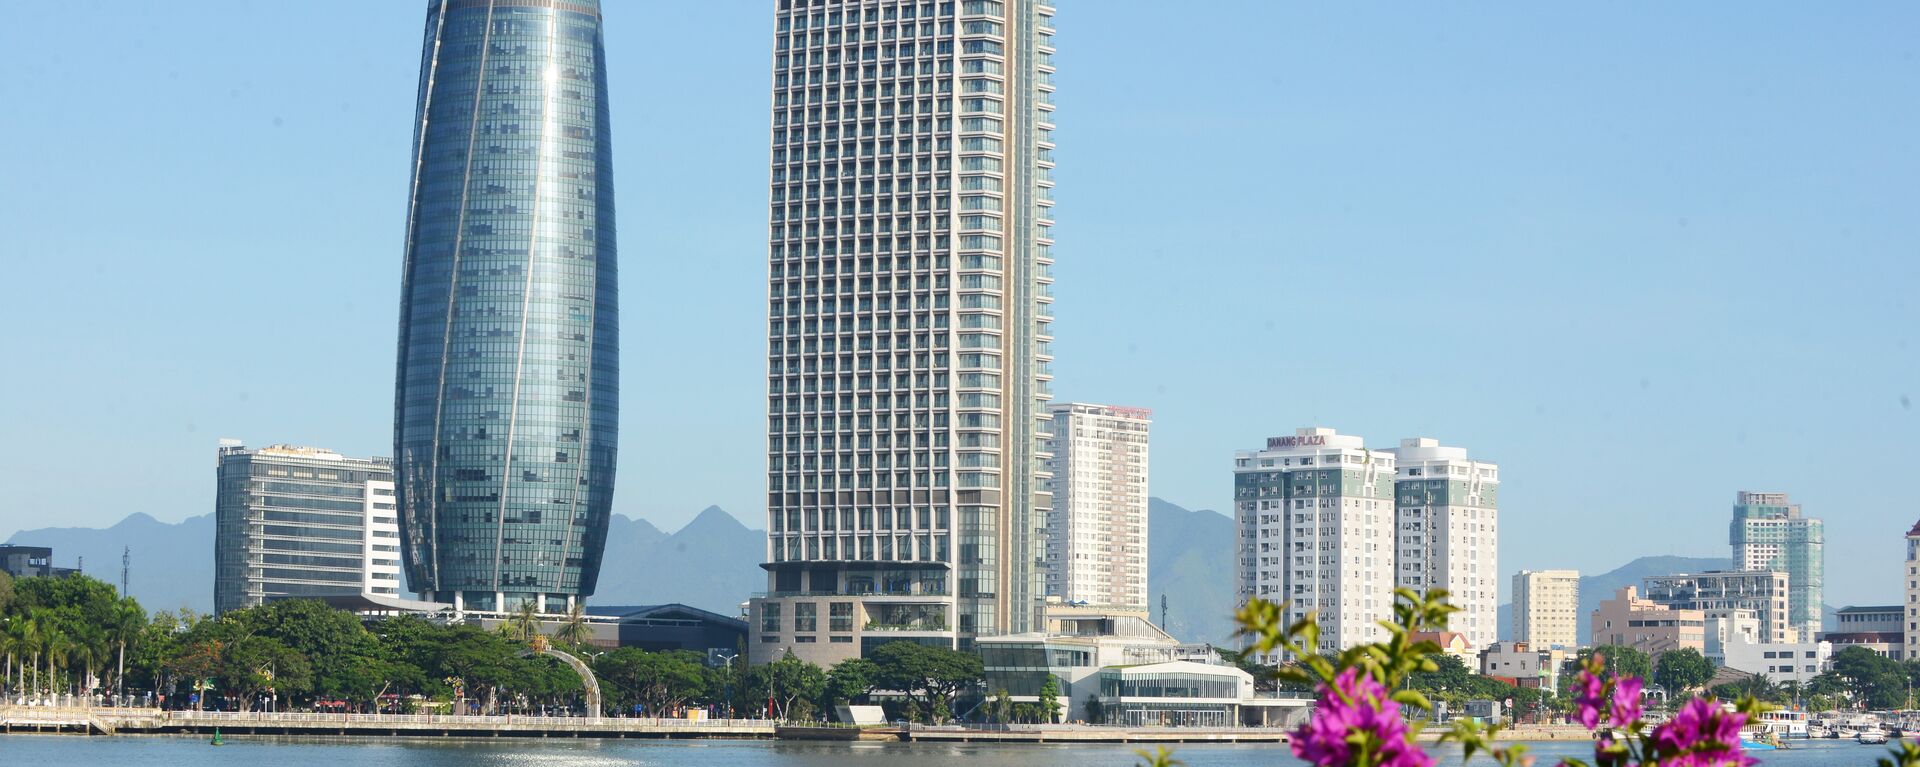 Sông Hàn và tòa nhà Trung tâm hành chính với lối kiến trúc hình tháp trụ tròn cao 175,5m là hai biểu tượng đăng trưng của Đà Nẵng, thành phố đăng cai Tuần lễ Cấp cao APEC 2017. - Sputnik Việt Nam, 1920, 31.05.2024